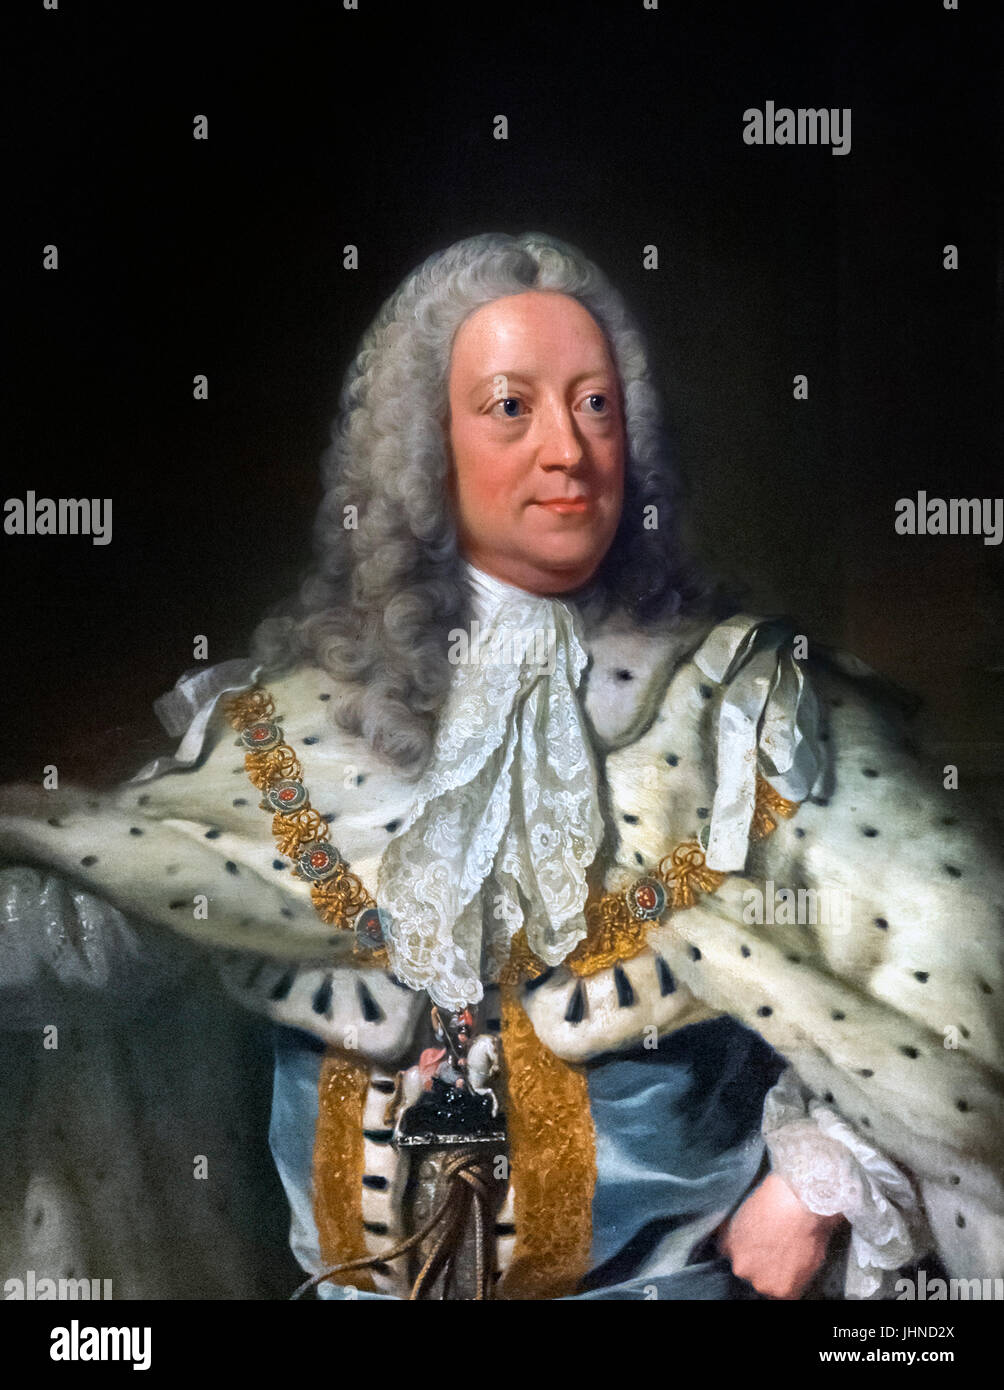 George II. Retrato del Rey Jorge II de Gran Bretaña (1683-1760) por John Shackleton Foto de stock